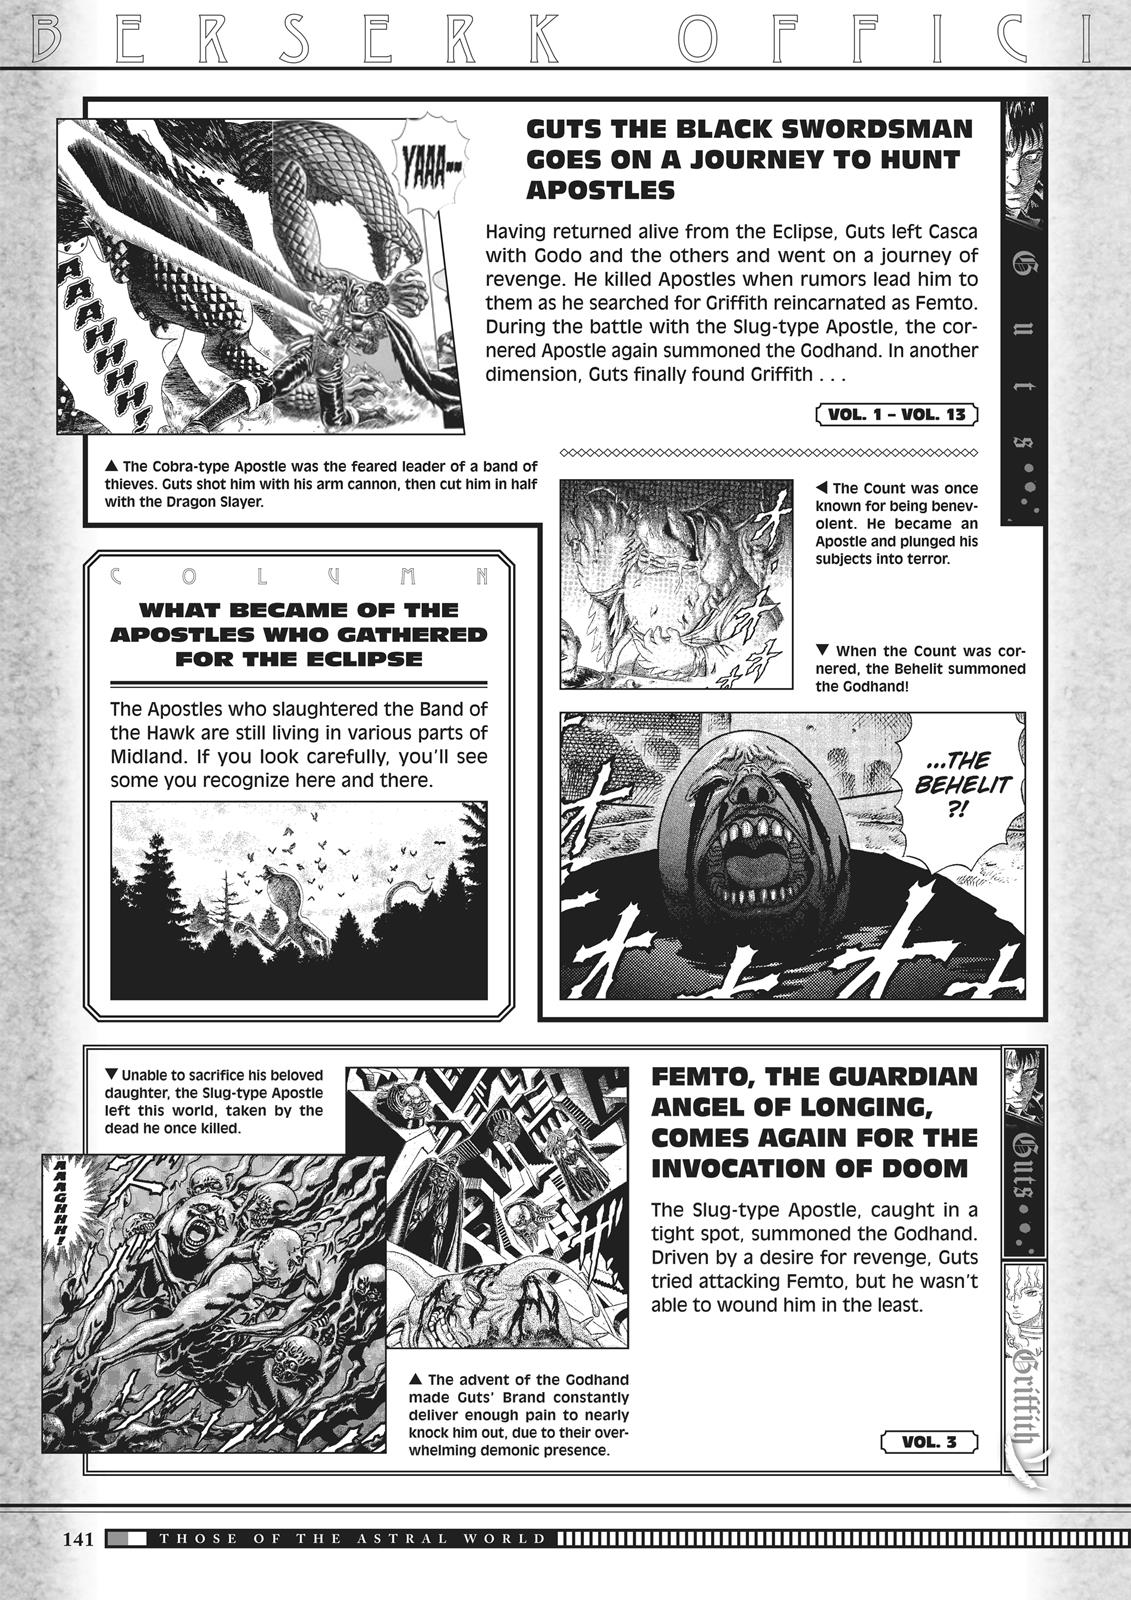 Berserk Manga Chapter 350.5 image 139